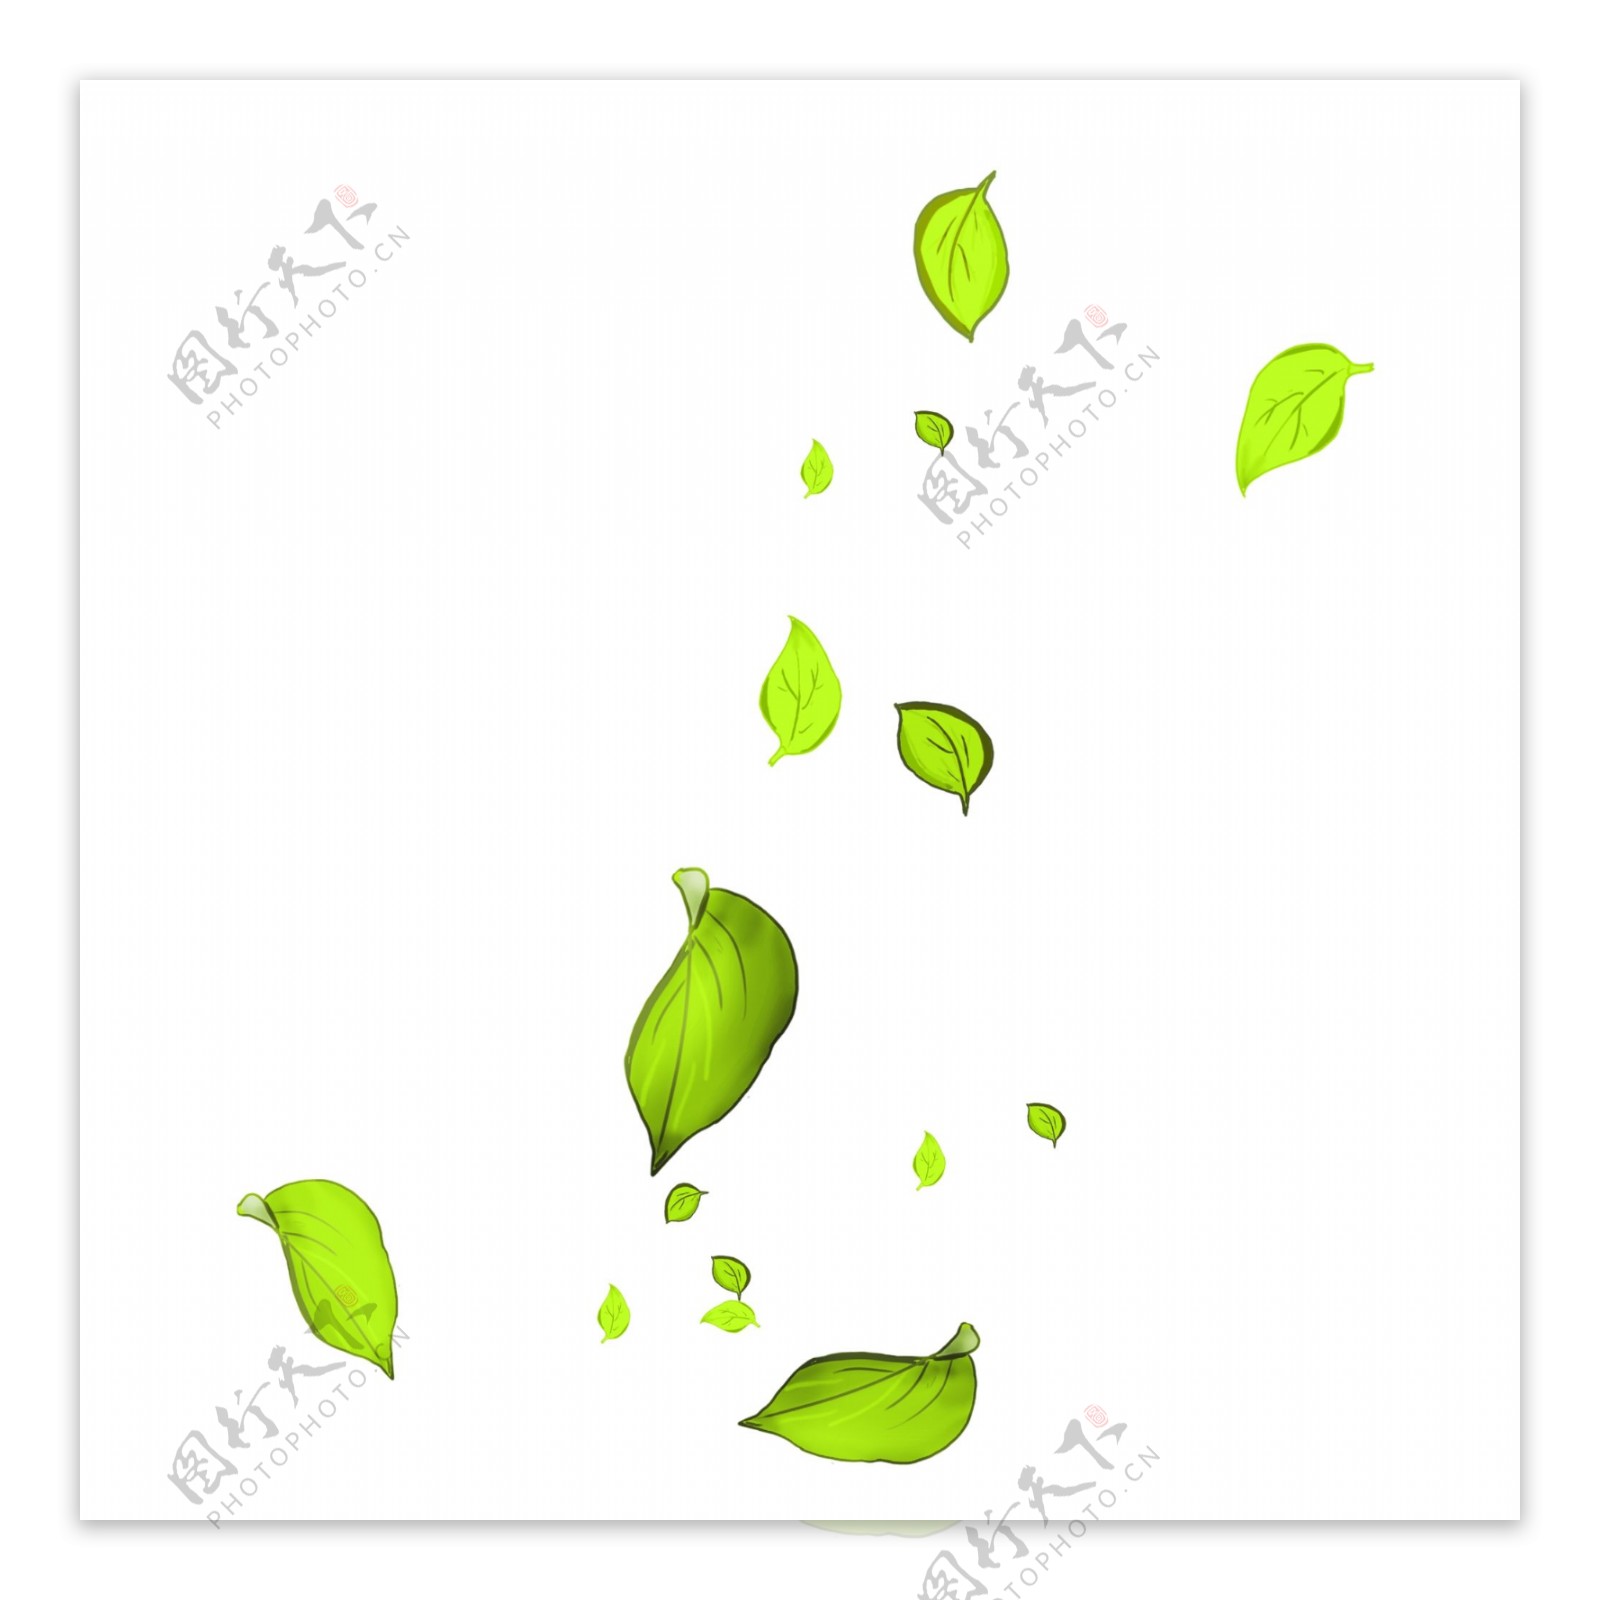 漂浮的绿色叶子插画